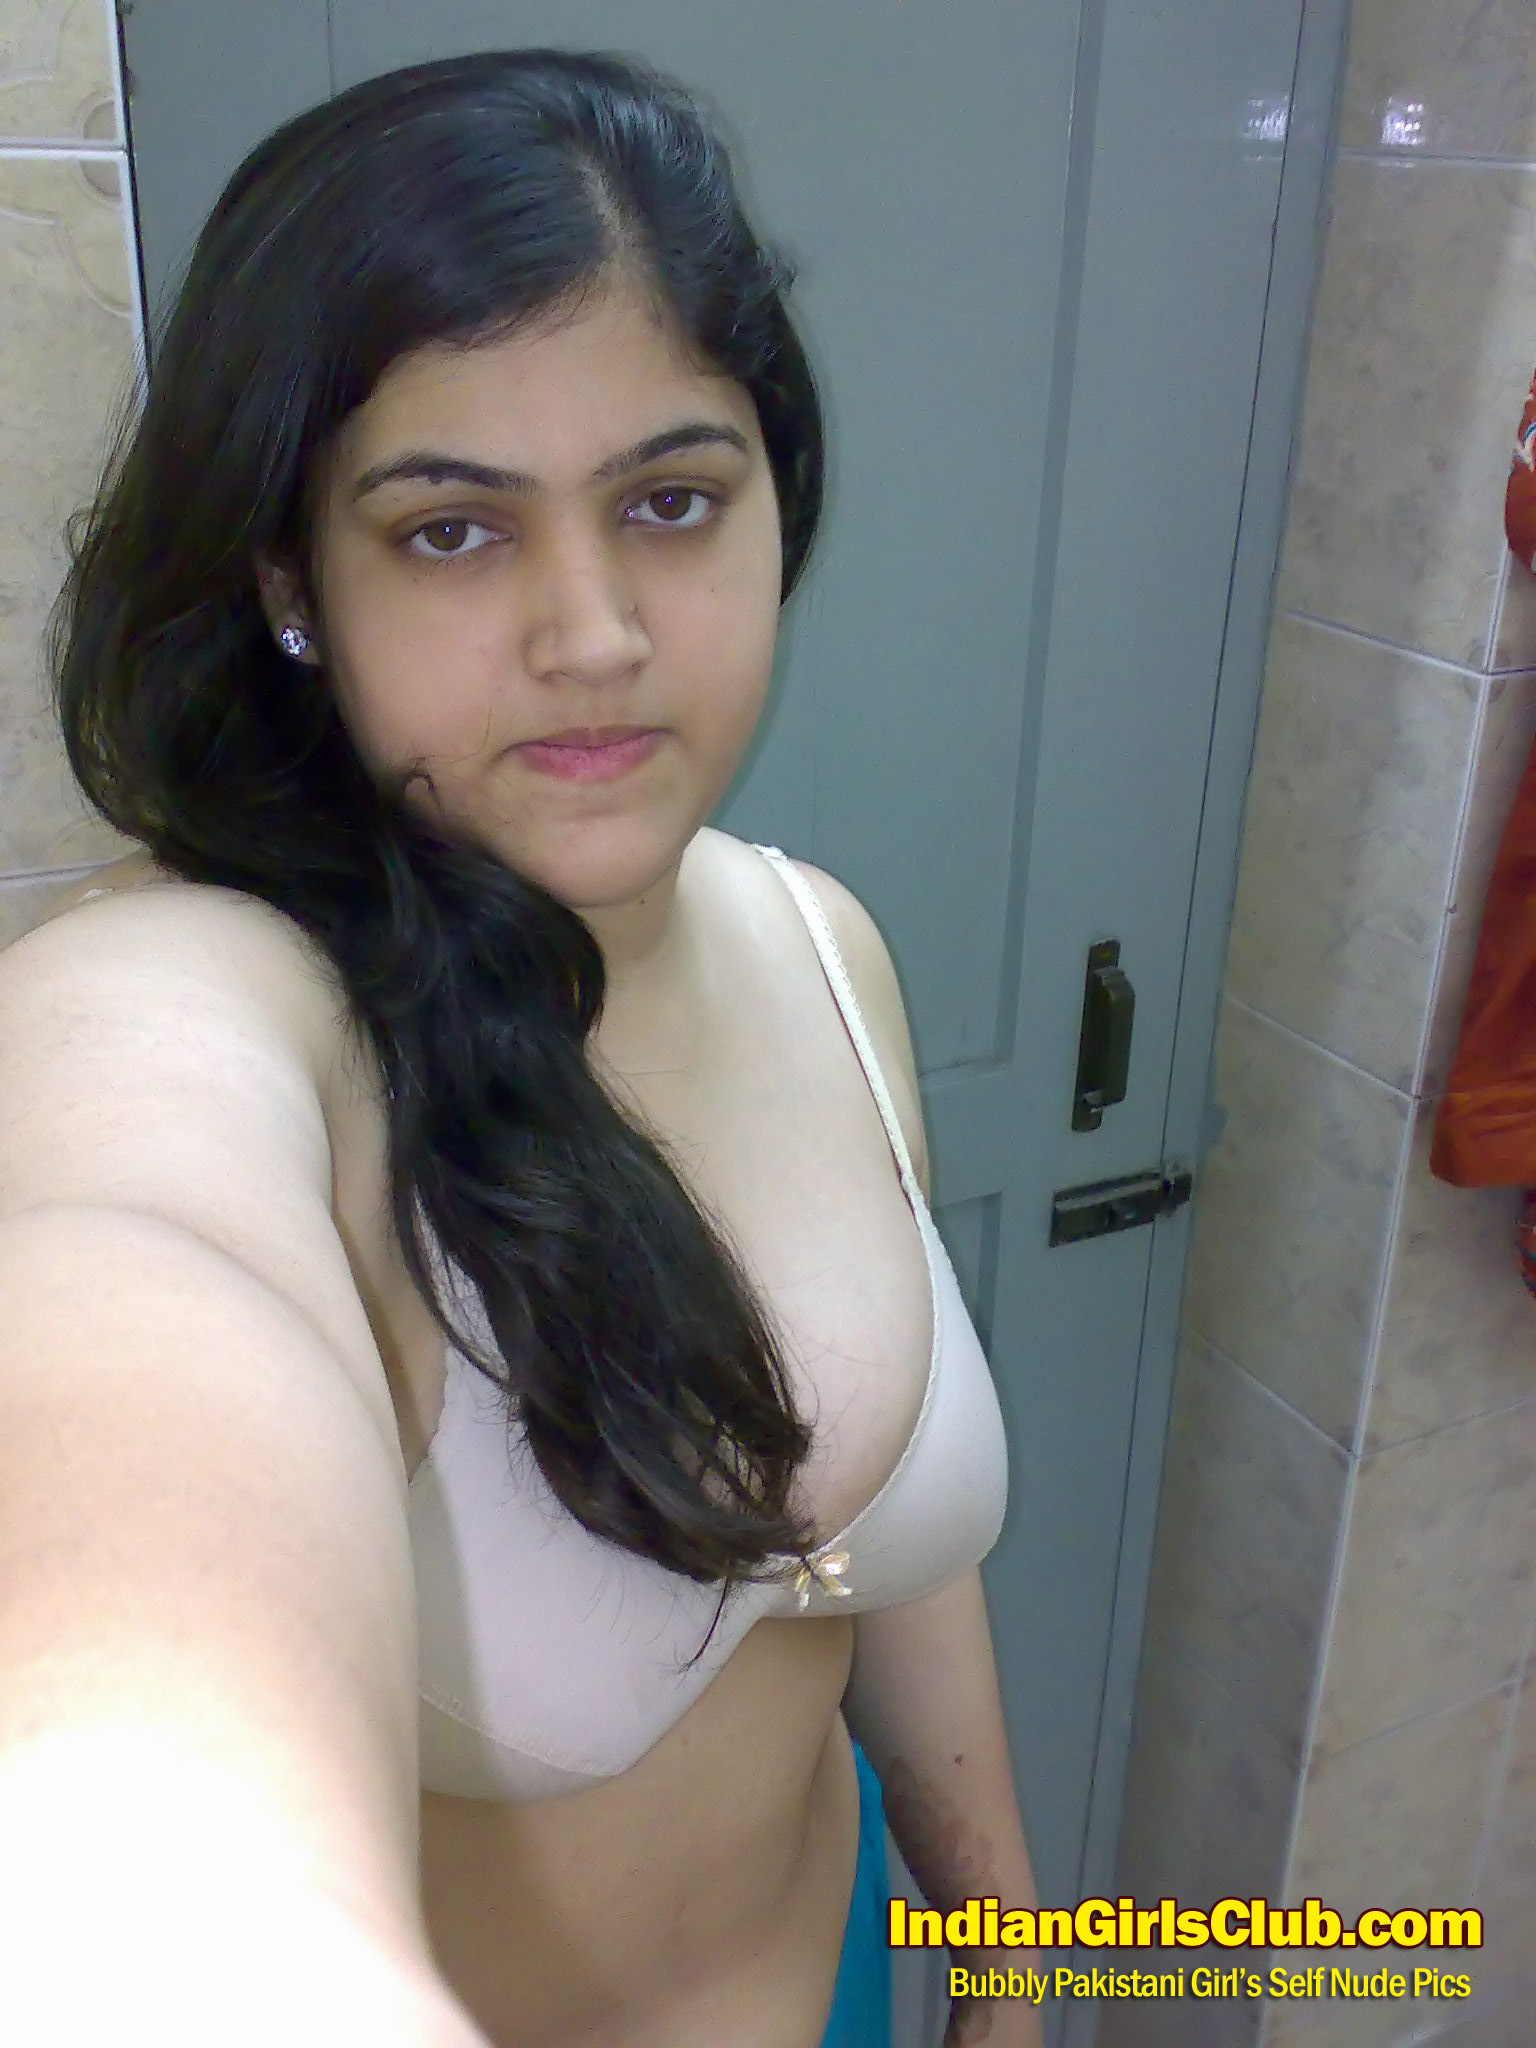 1536px x 2048px - pakistani girls nude 3 - Indian Girls Club - Nude Indian Girls & Hot Sexy  Indian Babes